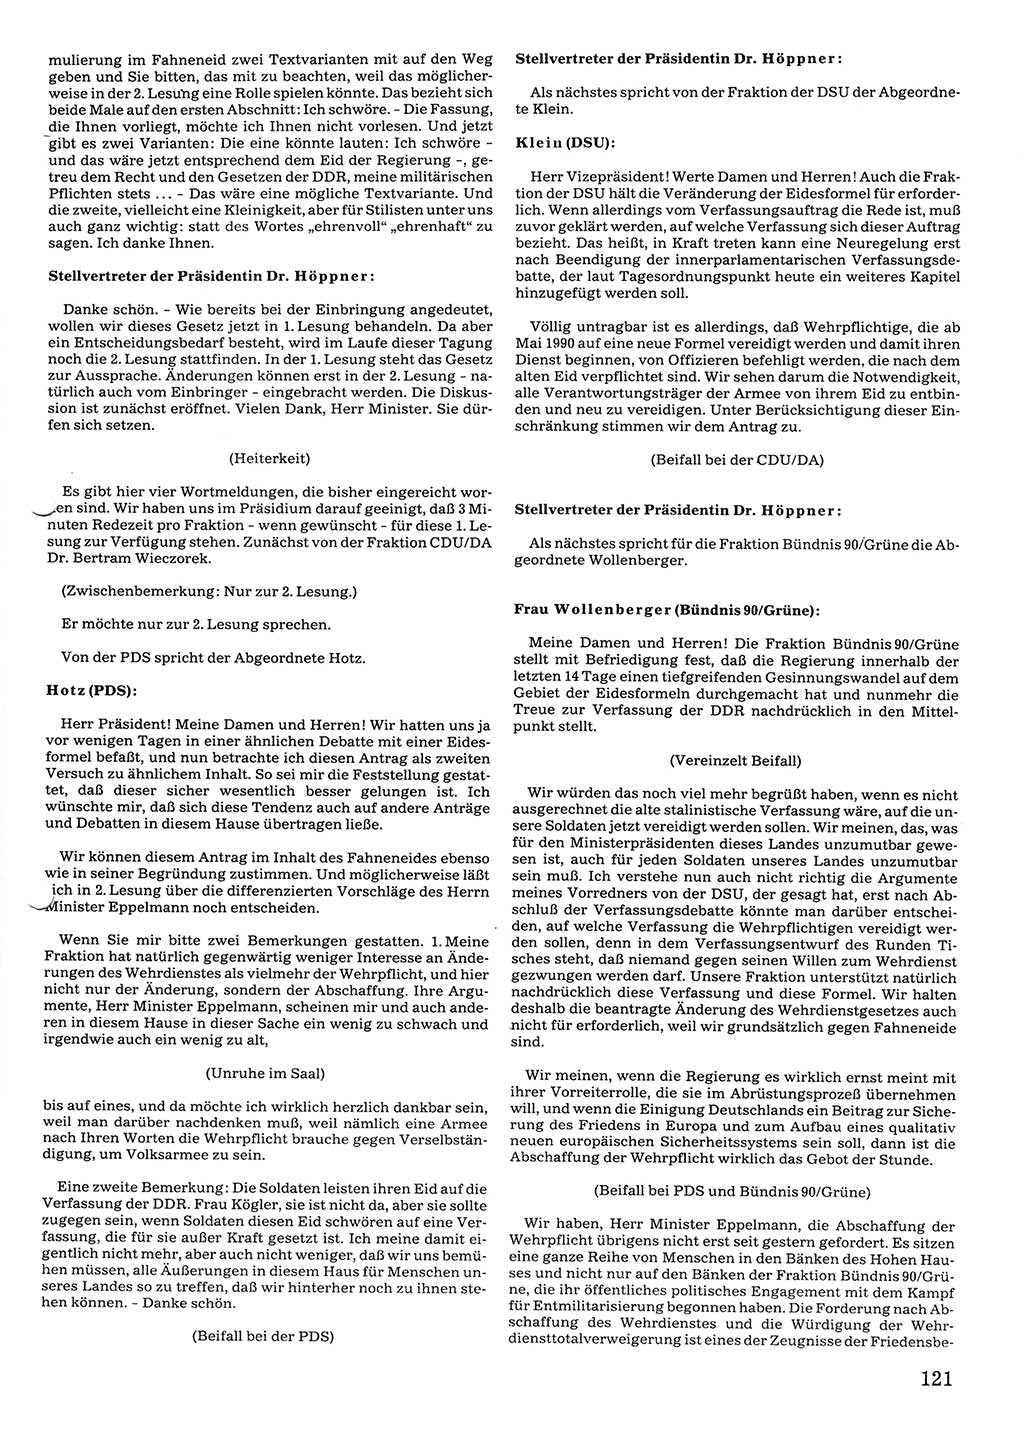 Tagungen der Volkskammer (VK) der Deutschen Demokratischen Republik (DDR), 10. Wahlperiode 1990, Seite 121 (VK. DDR 10. WP. 1990, Prot. Tg. 1-38, 5.4.-2.10.1990, S. 121)